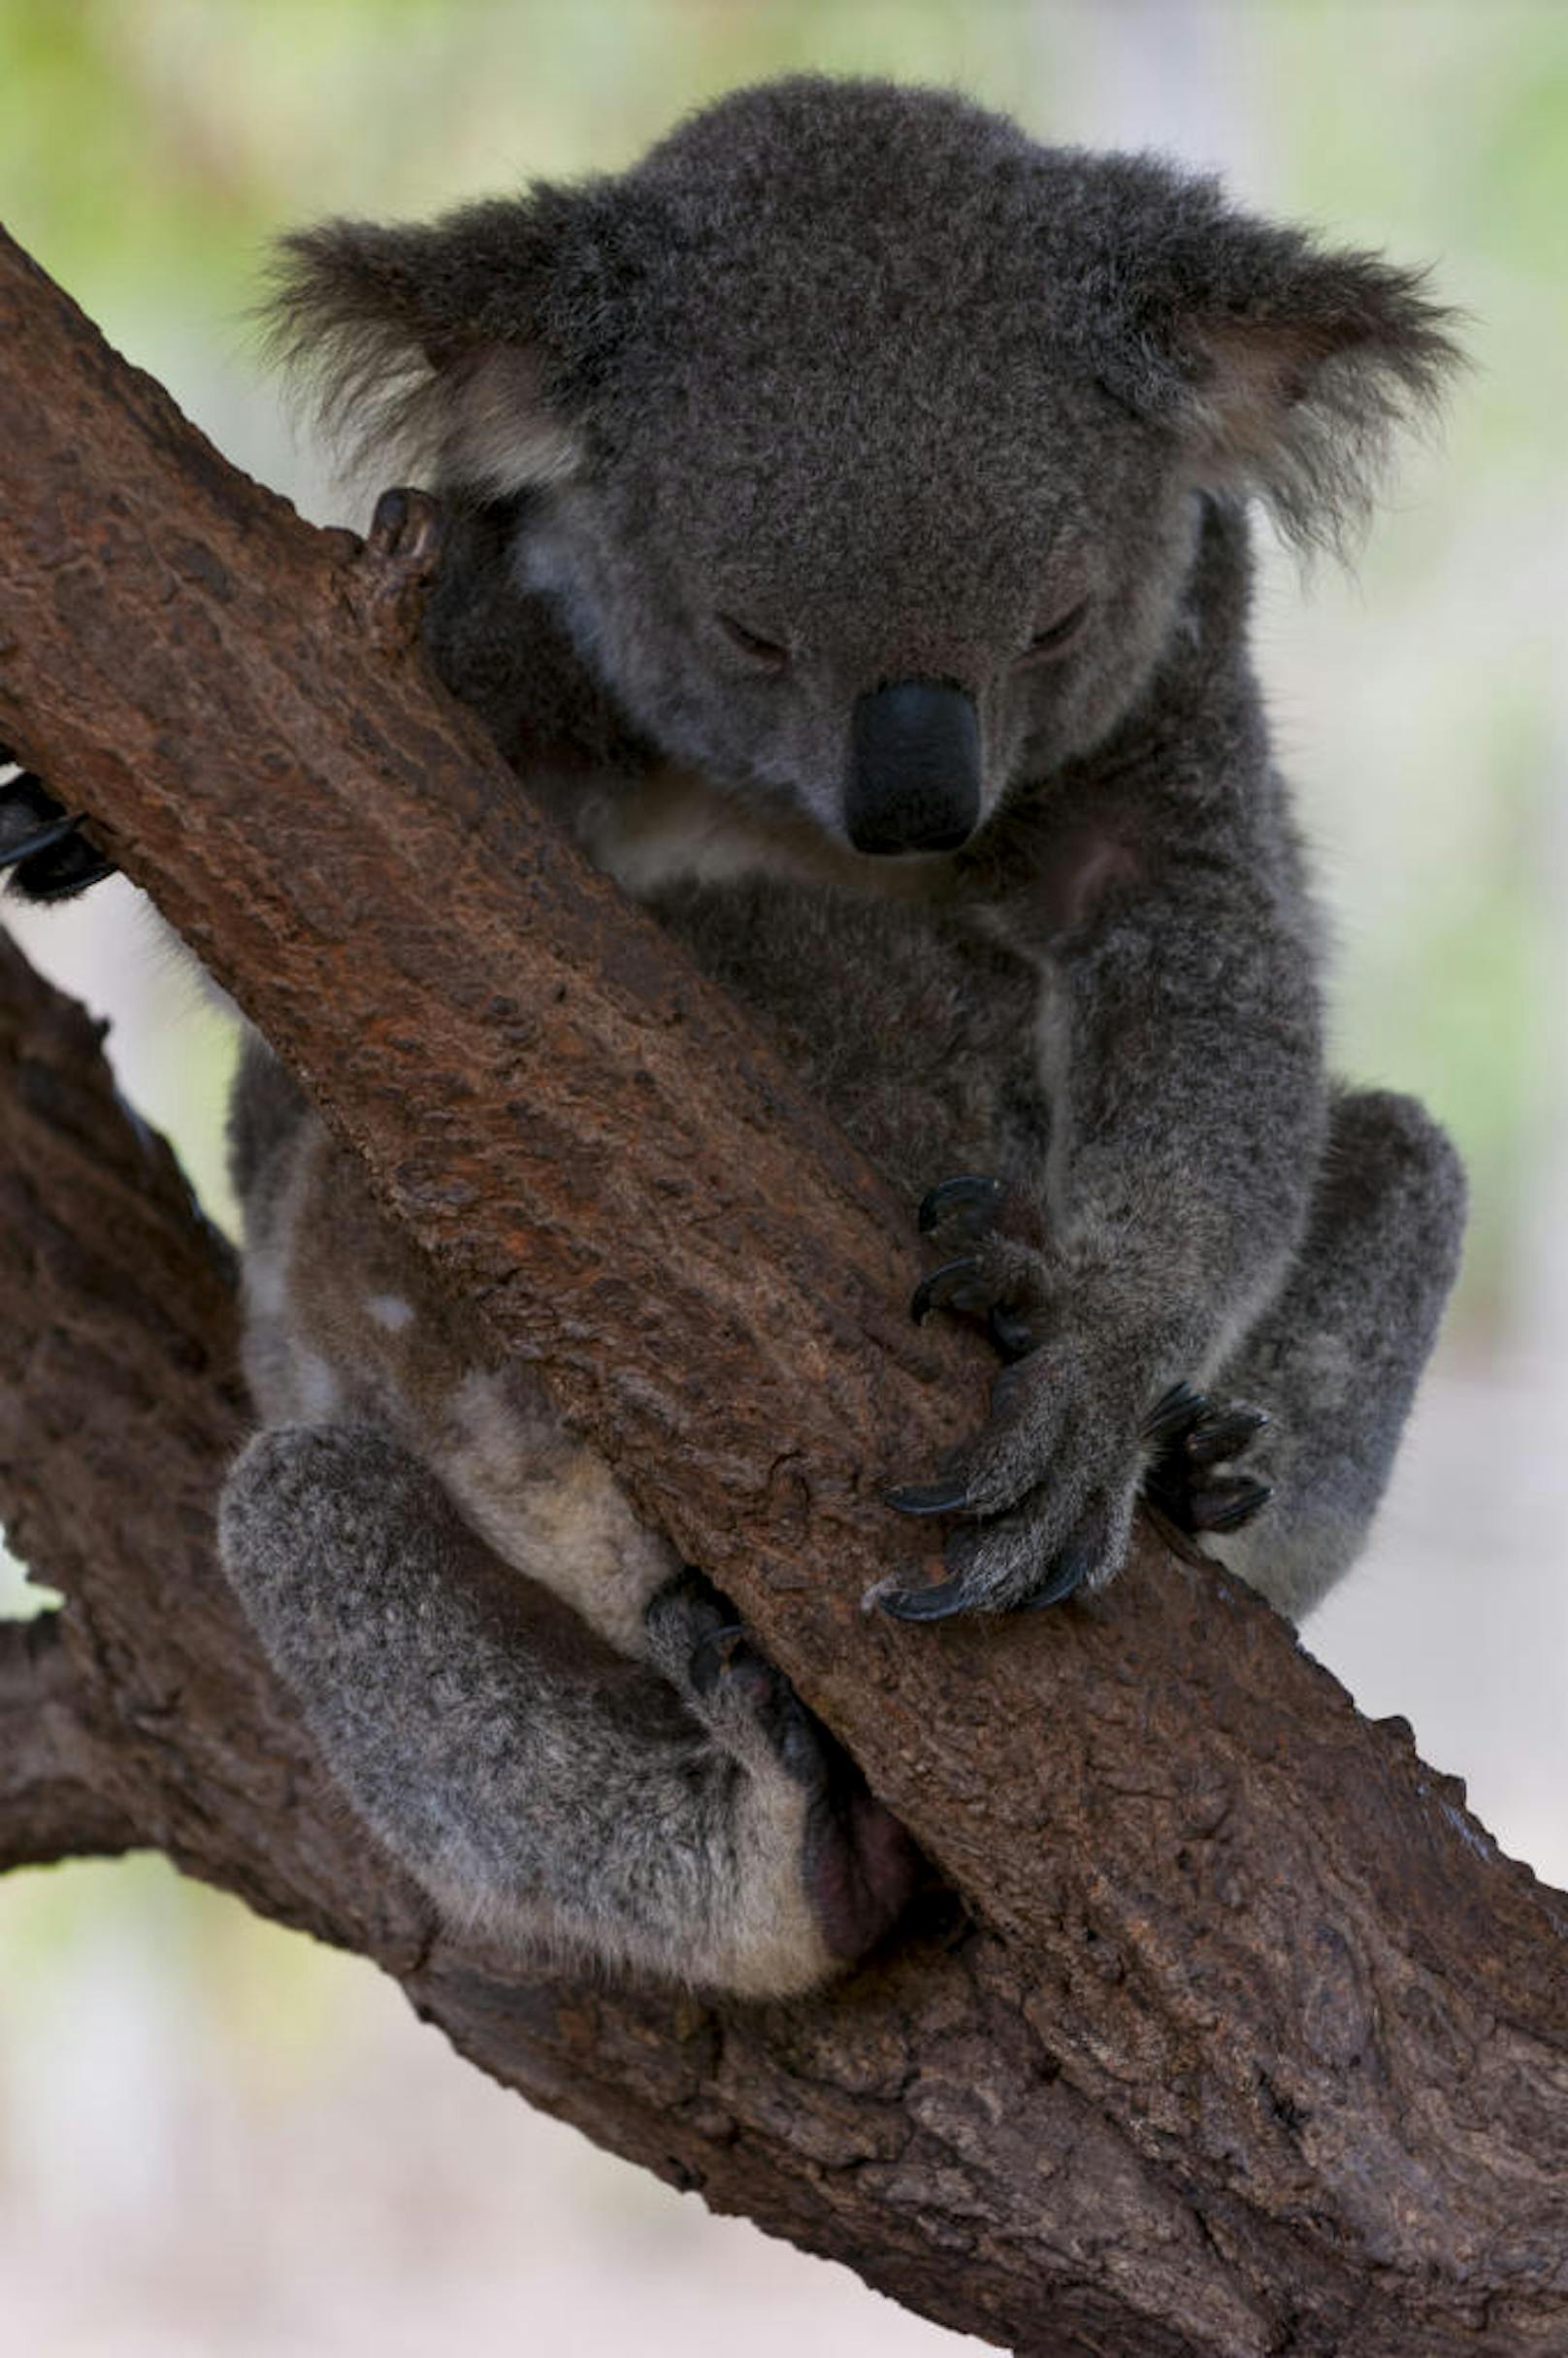 "Wenn Feuer ausbricht, dann klettern Koalas in die Krone der Bäume, rollen sich zusammen und machen sich klein", erklärt Sue Ashton, Leiterin eines Koala-Krankenhauses in der Nähe.